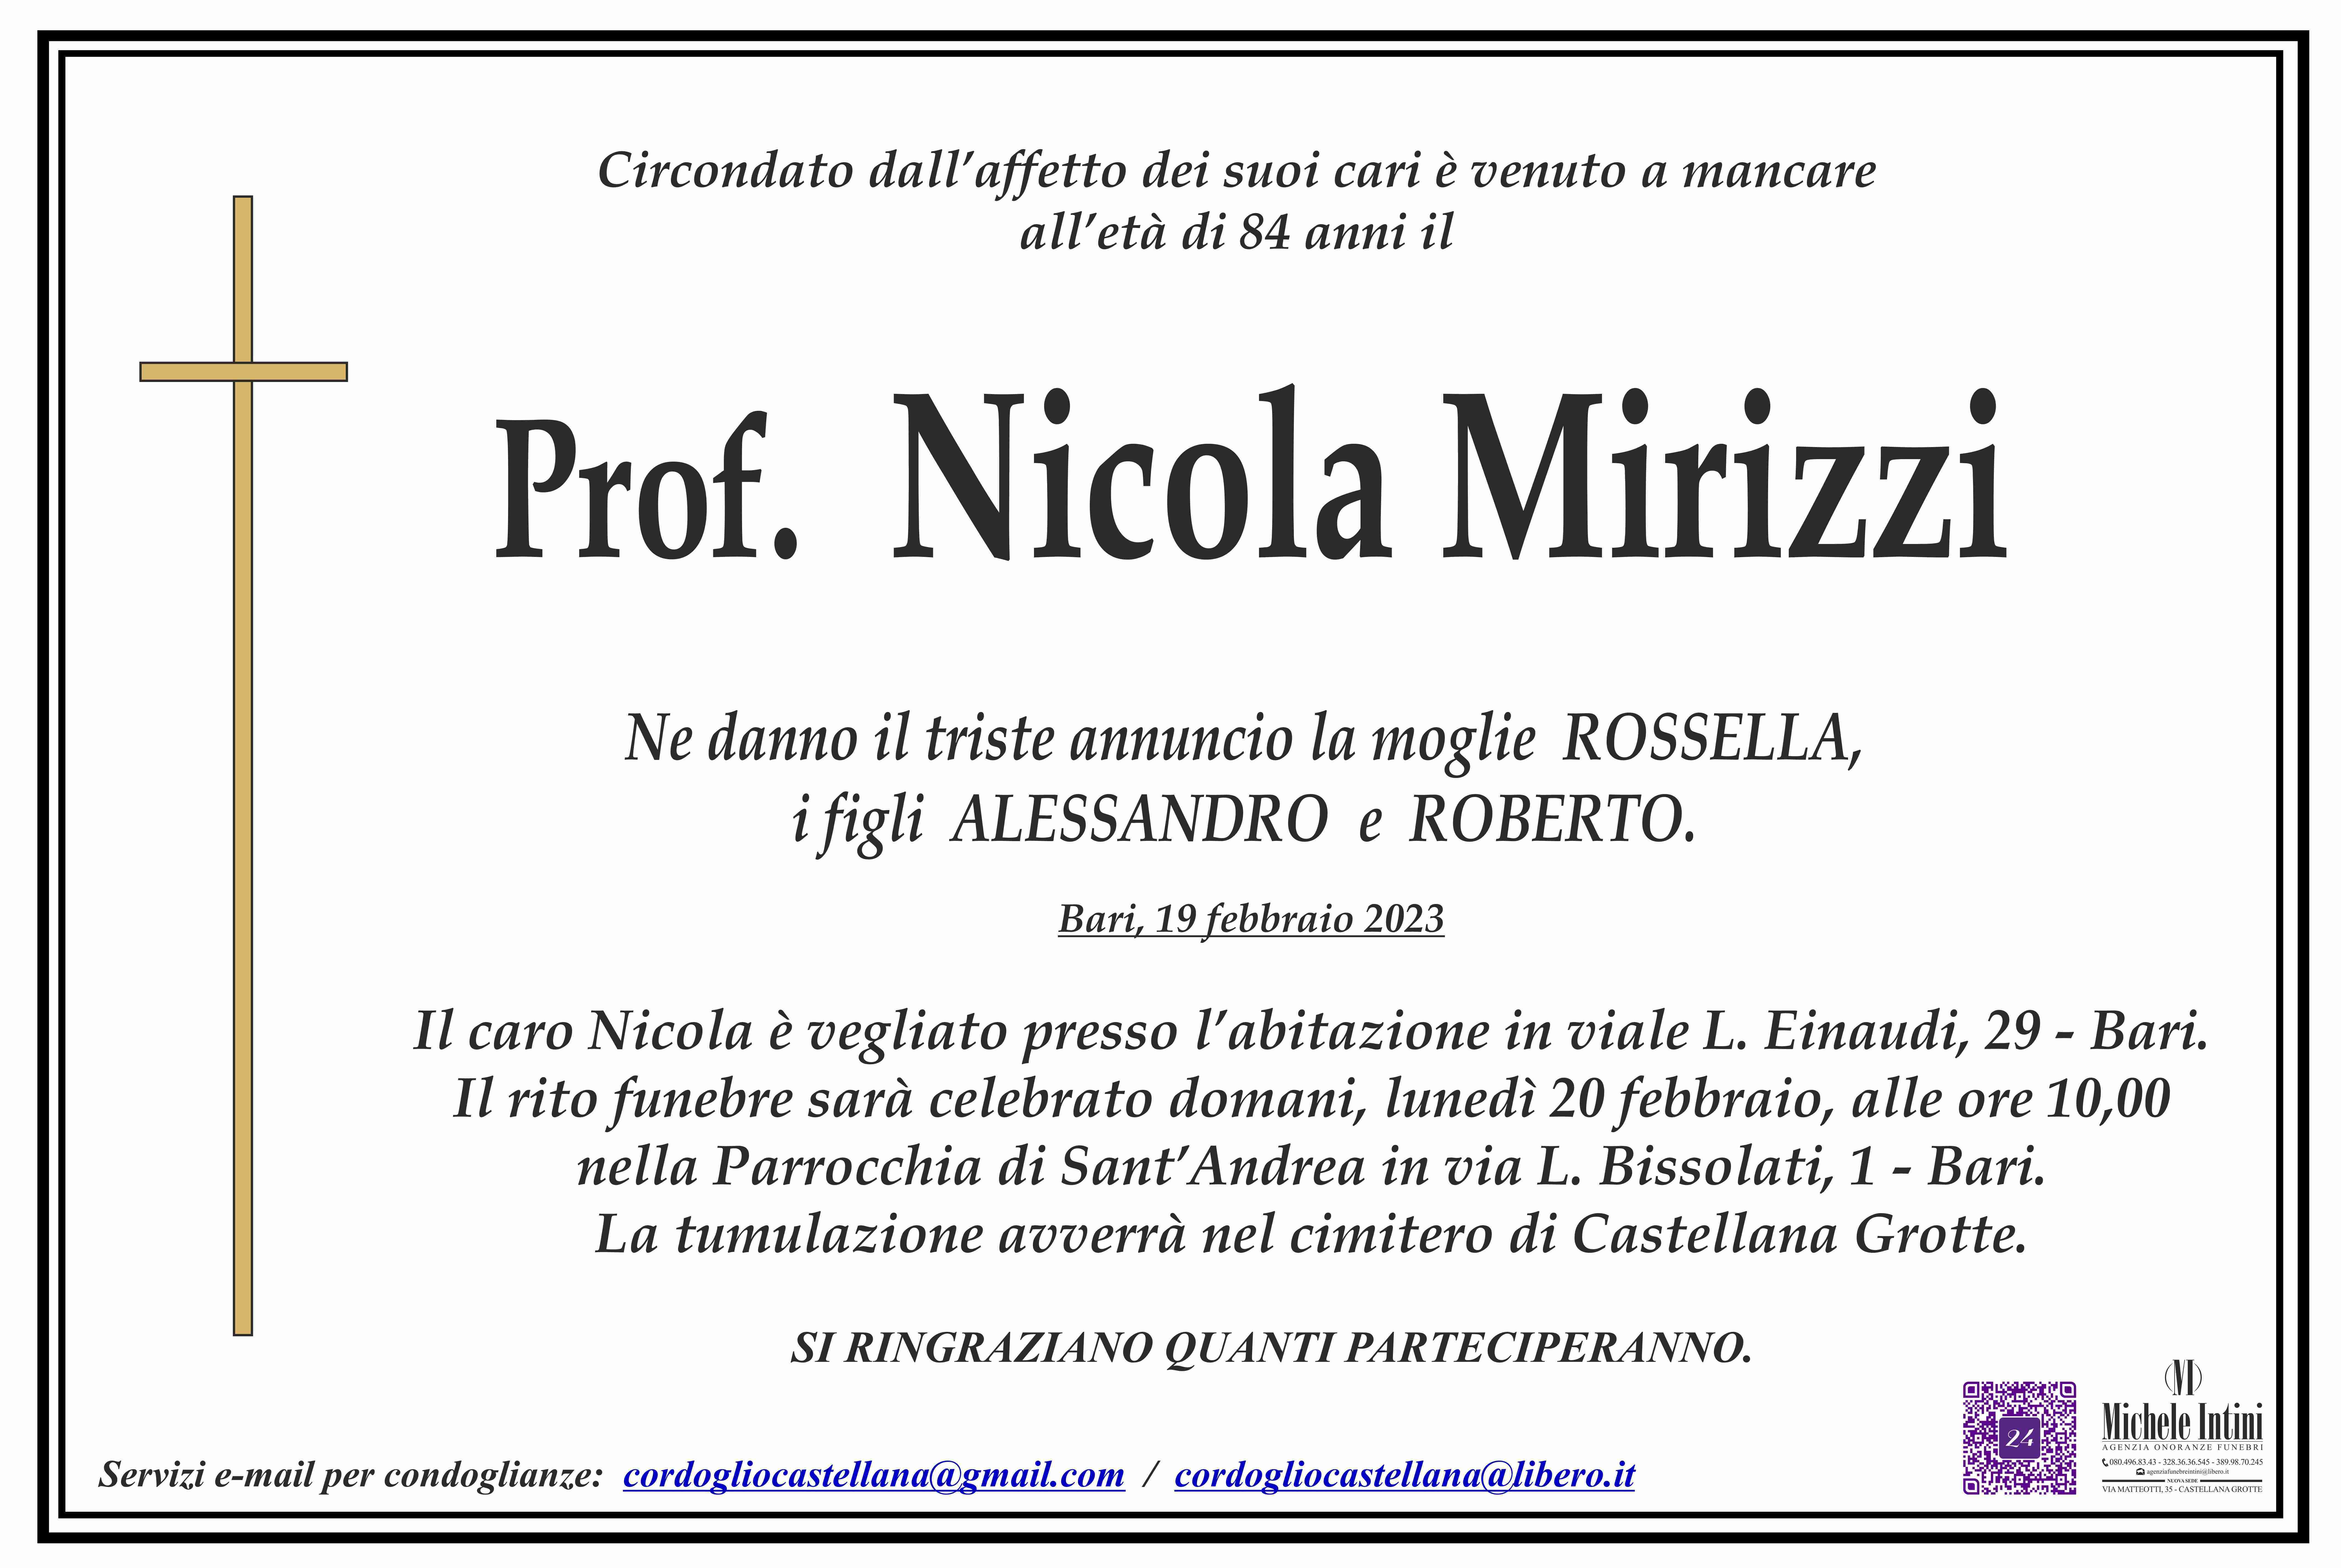 Nicola Mirizzi